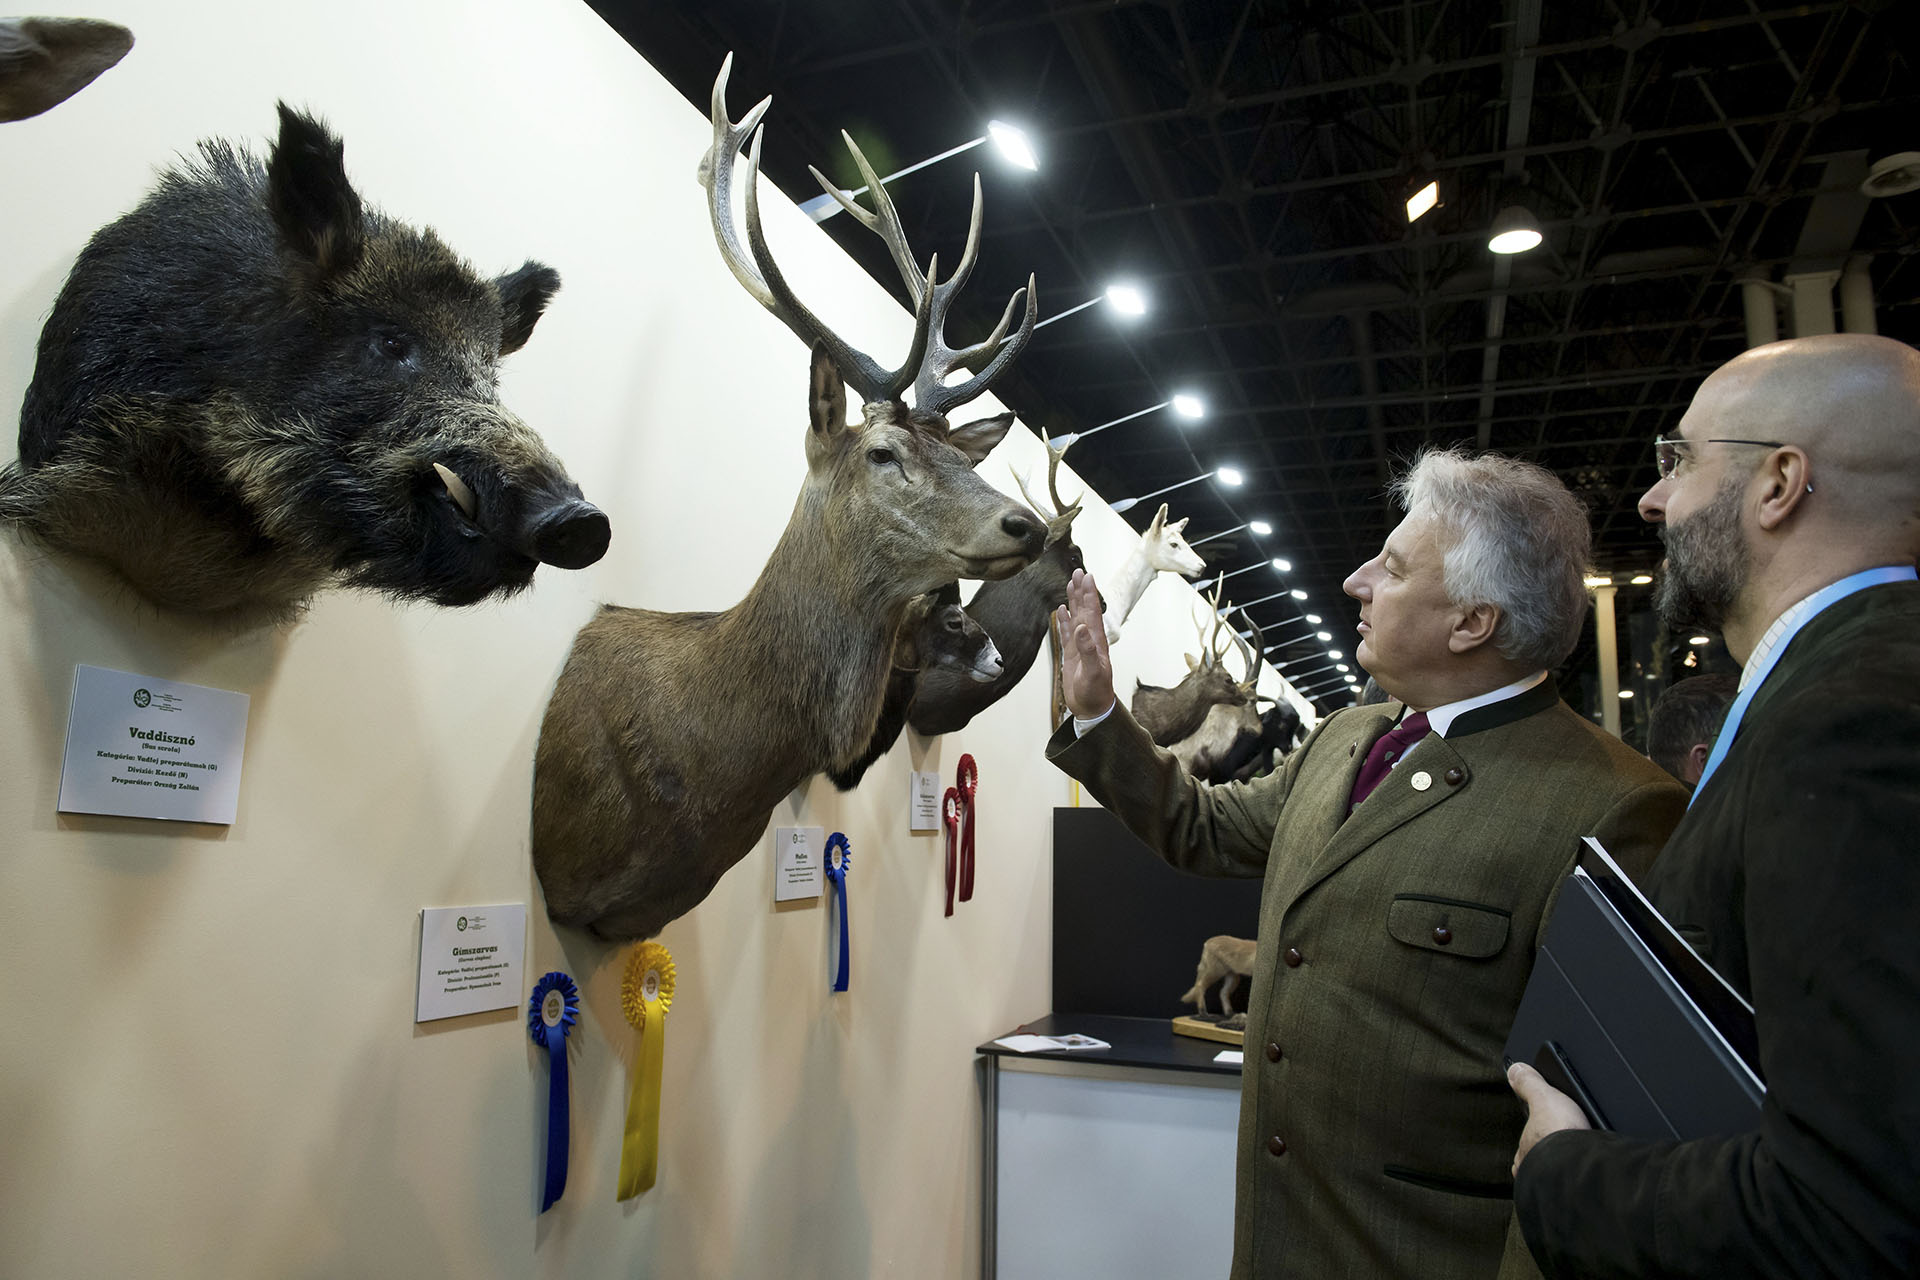 Legalább hatmillió résztvevő kellene a vadászati világkiállításra, hogy gazdaságilag is megérje